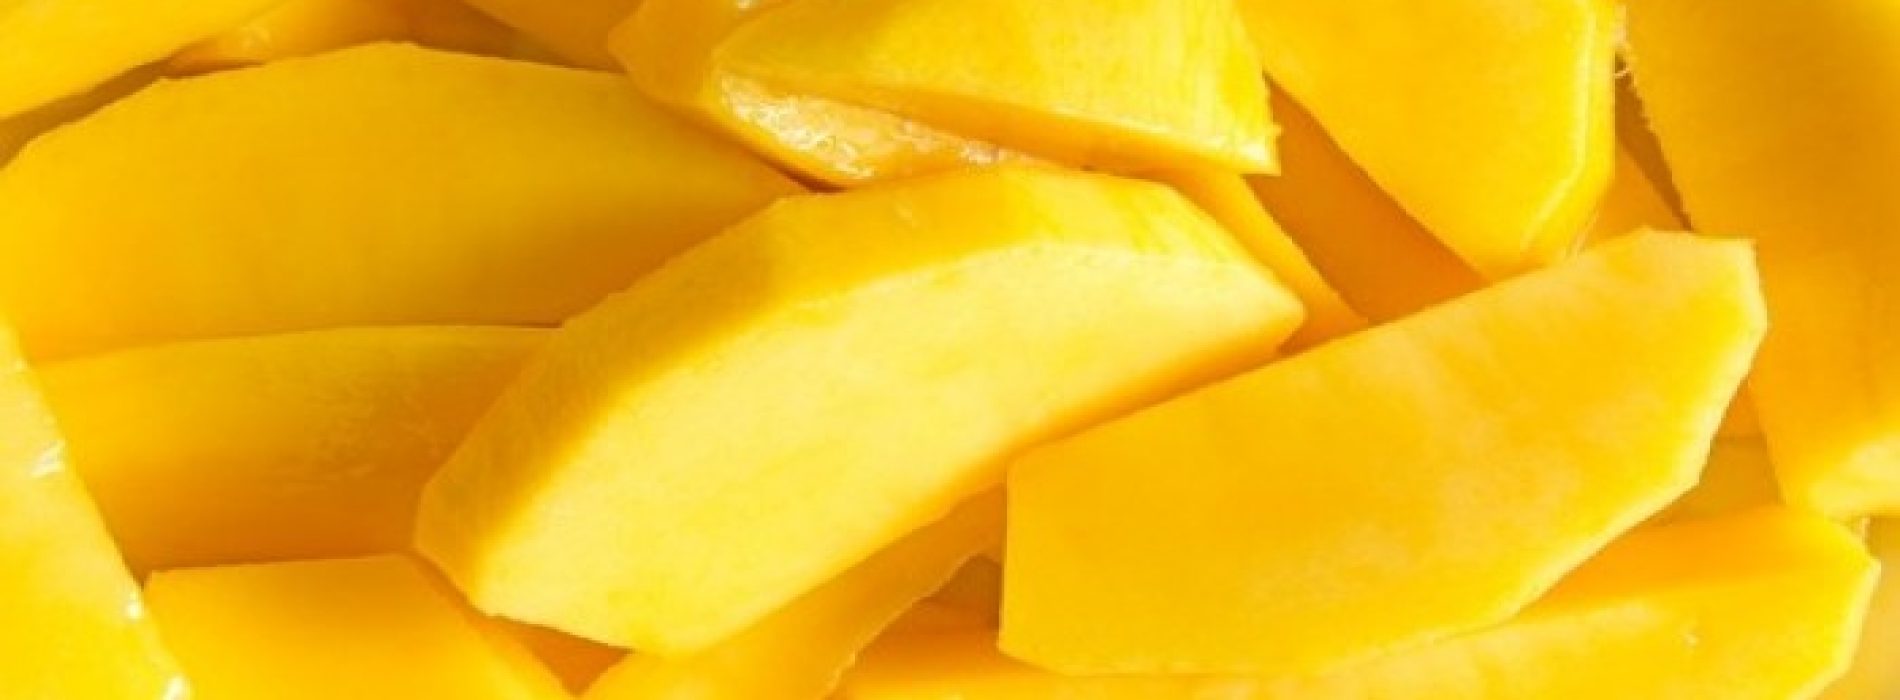 Mango: de vrucht tegen veroudering en andere weldadige effecten